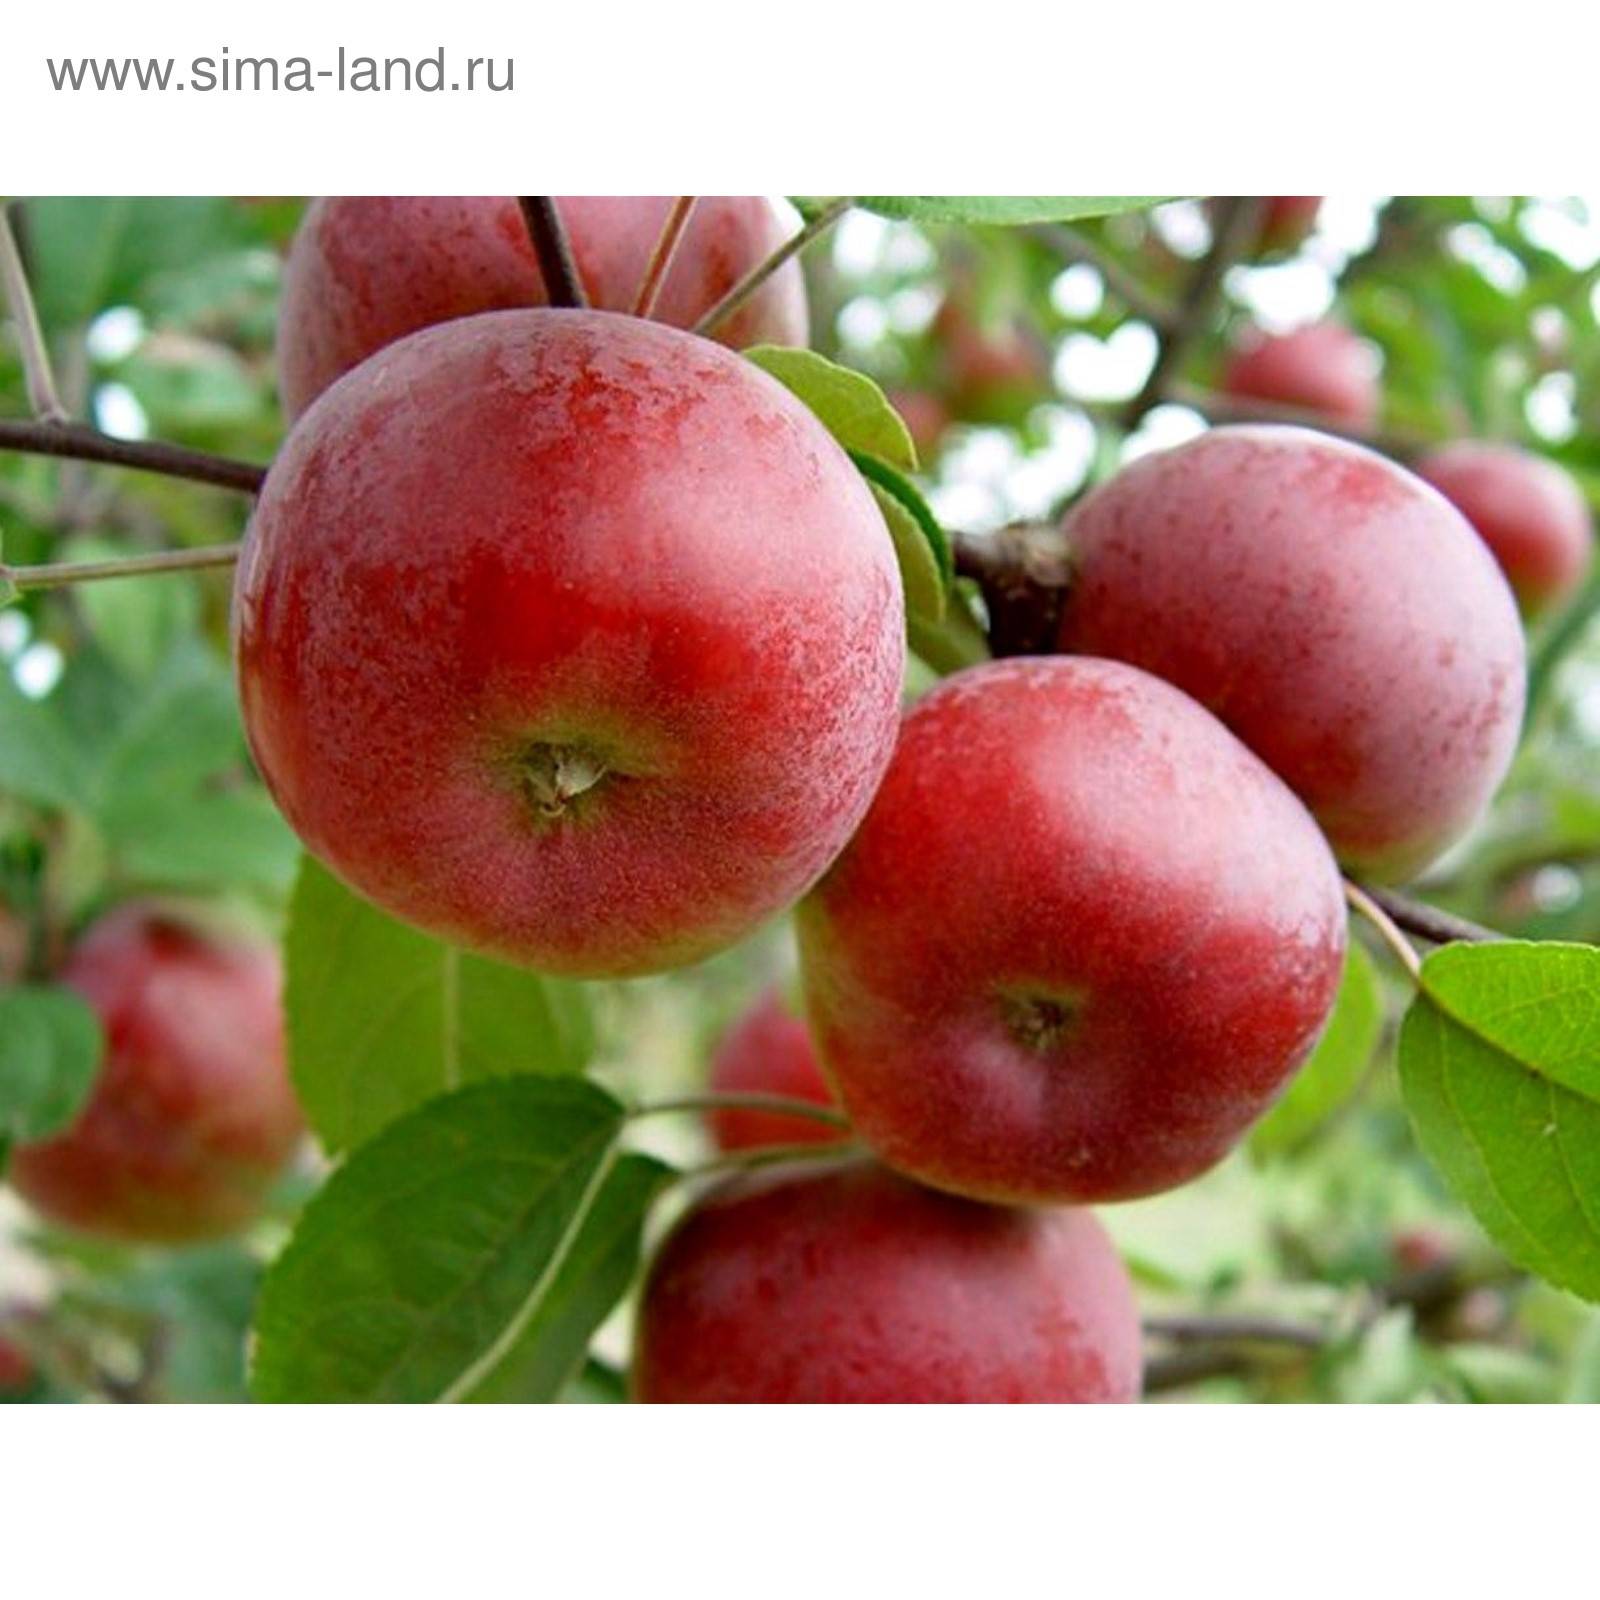 Описание сорта яблони коваленковское: фото яблок, важные характеристики, урожайность с дерева